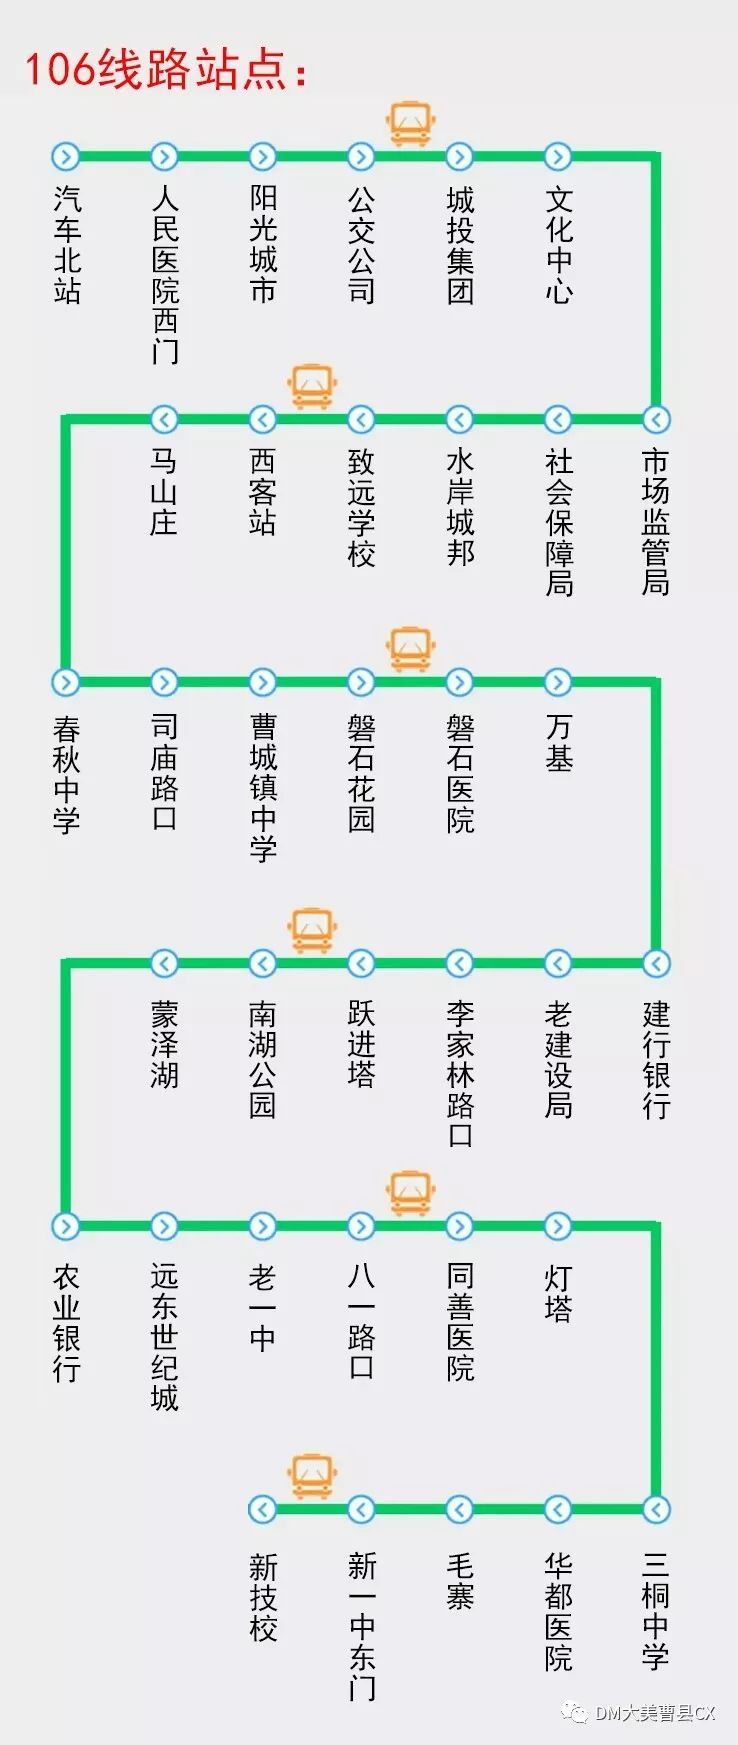 最新整理:曹县的五个公交路线图